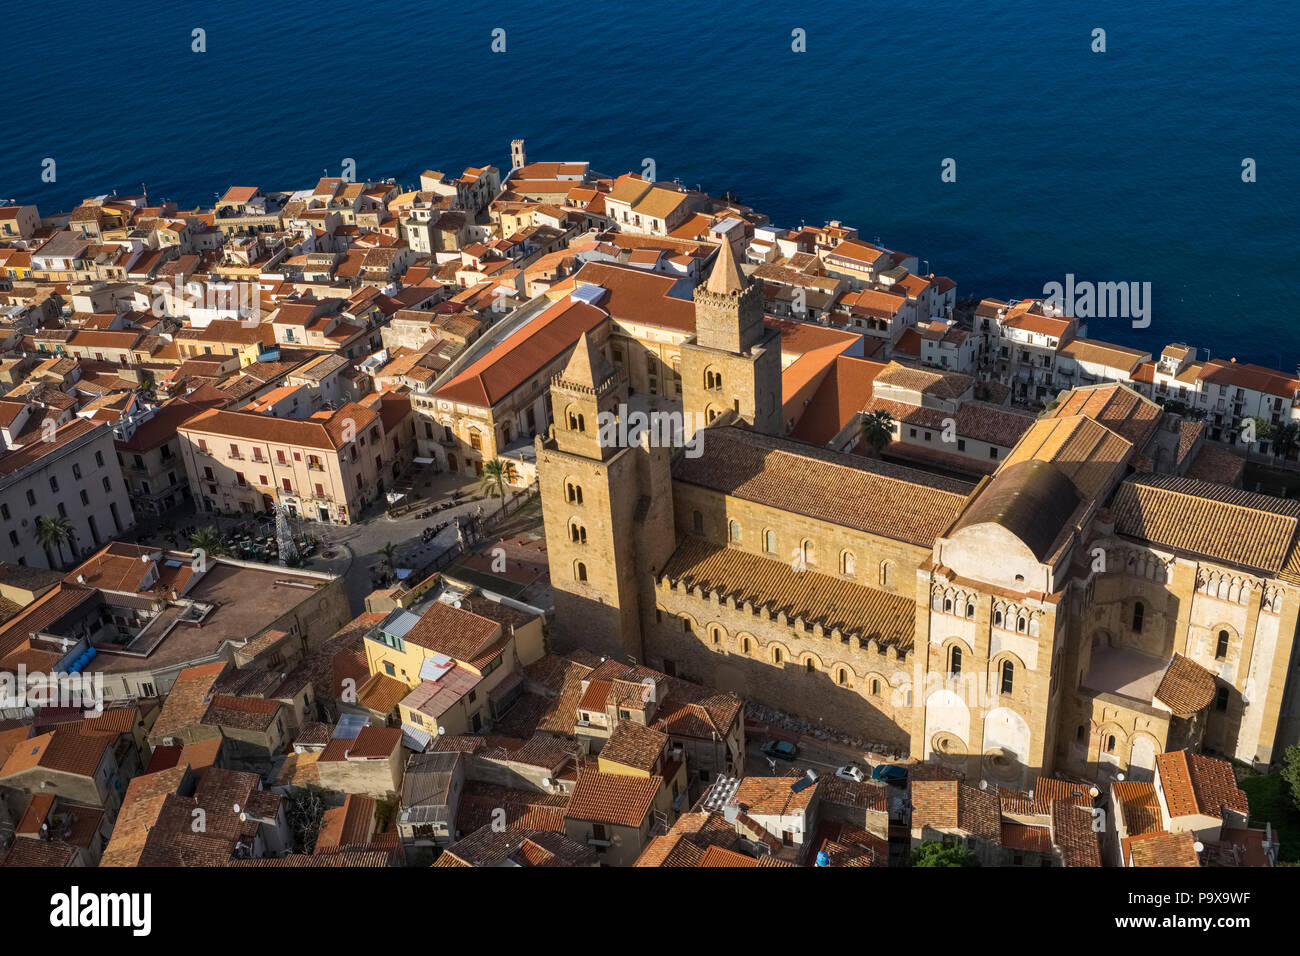 Vue aérienne de la cathédrale de Cefalù et les toits rouges de l'architecture des bâtiments, Cefalù, Sicile, Italie, Europe Banque D'Images